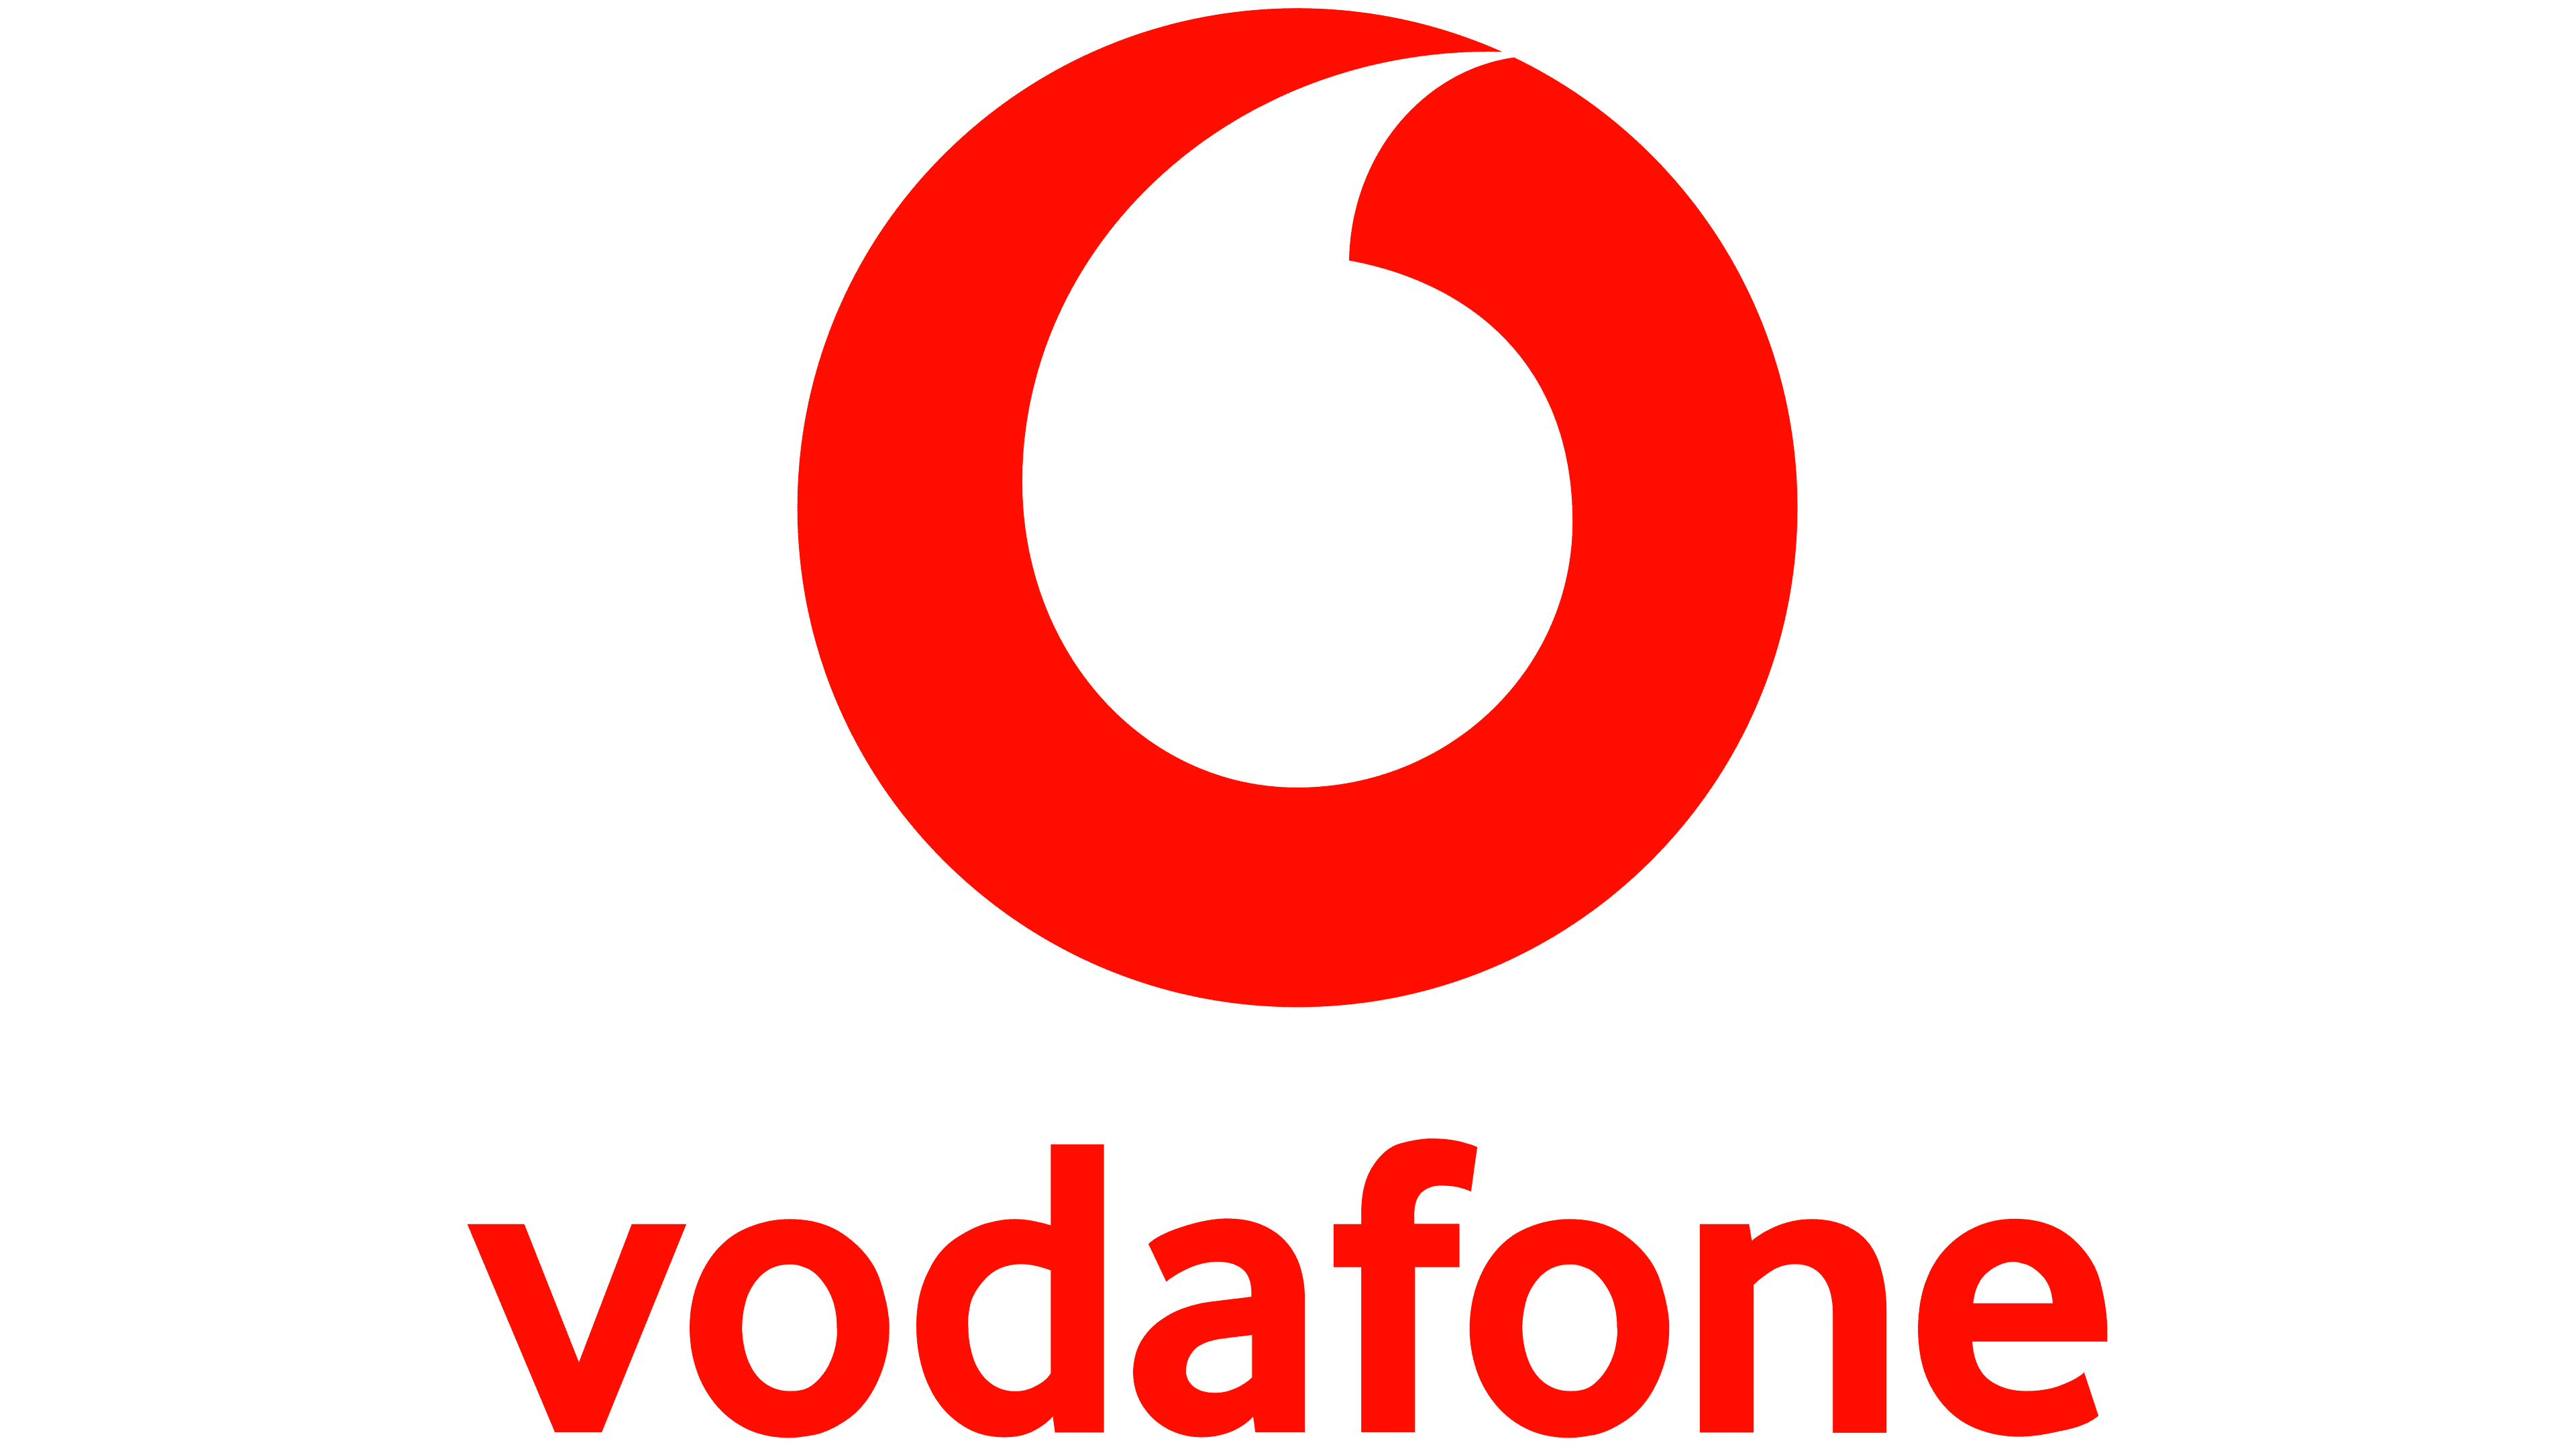 Vodafone Logo - 1000 Marken: Alle berühmten Logos, Bedeutung und Geschichte